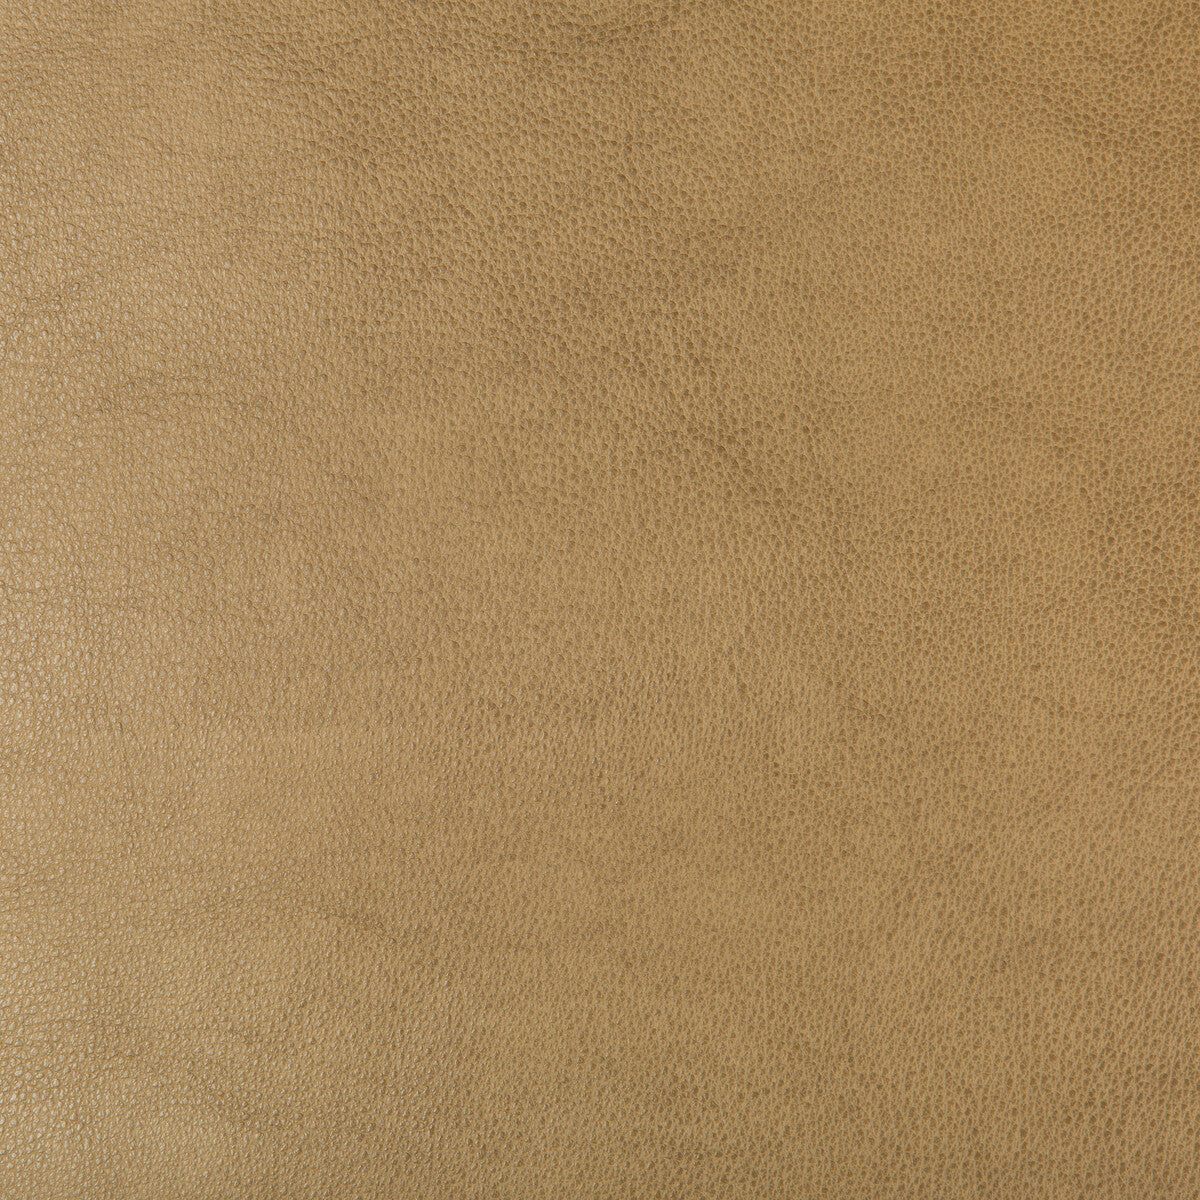 Kravet Design fabric in dust-106 color - pattern DUST.106.0 - by Kravet Design